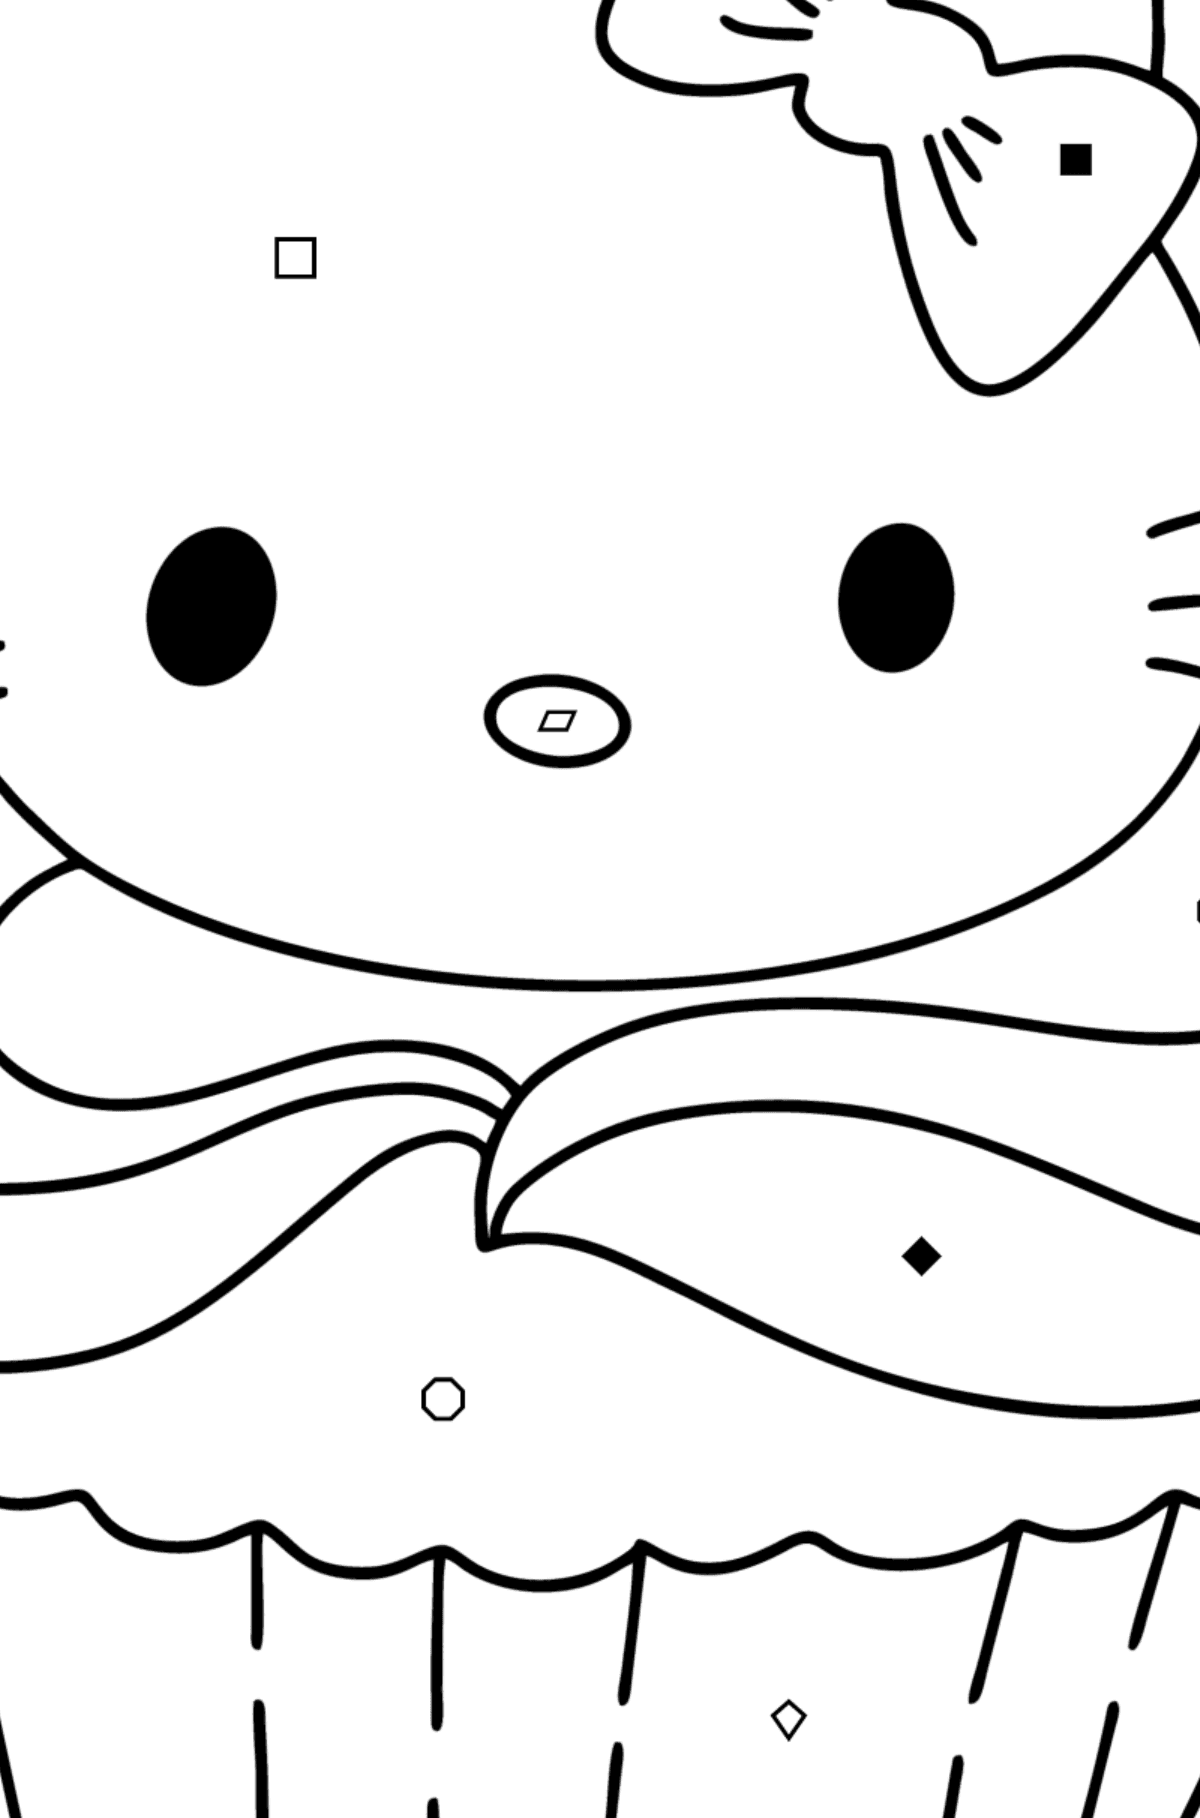 Desenho para colorir de bolinhos da Hello Kitty - Colorir por Símbolos para Crianças